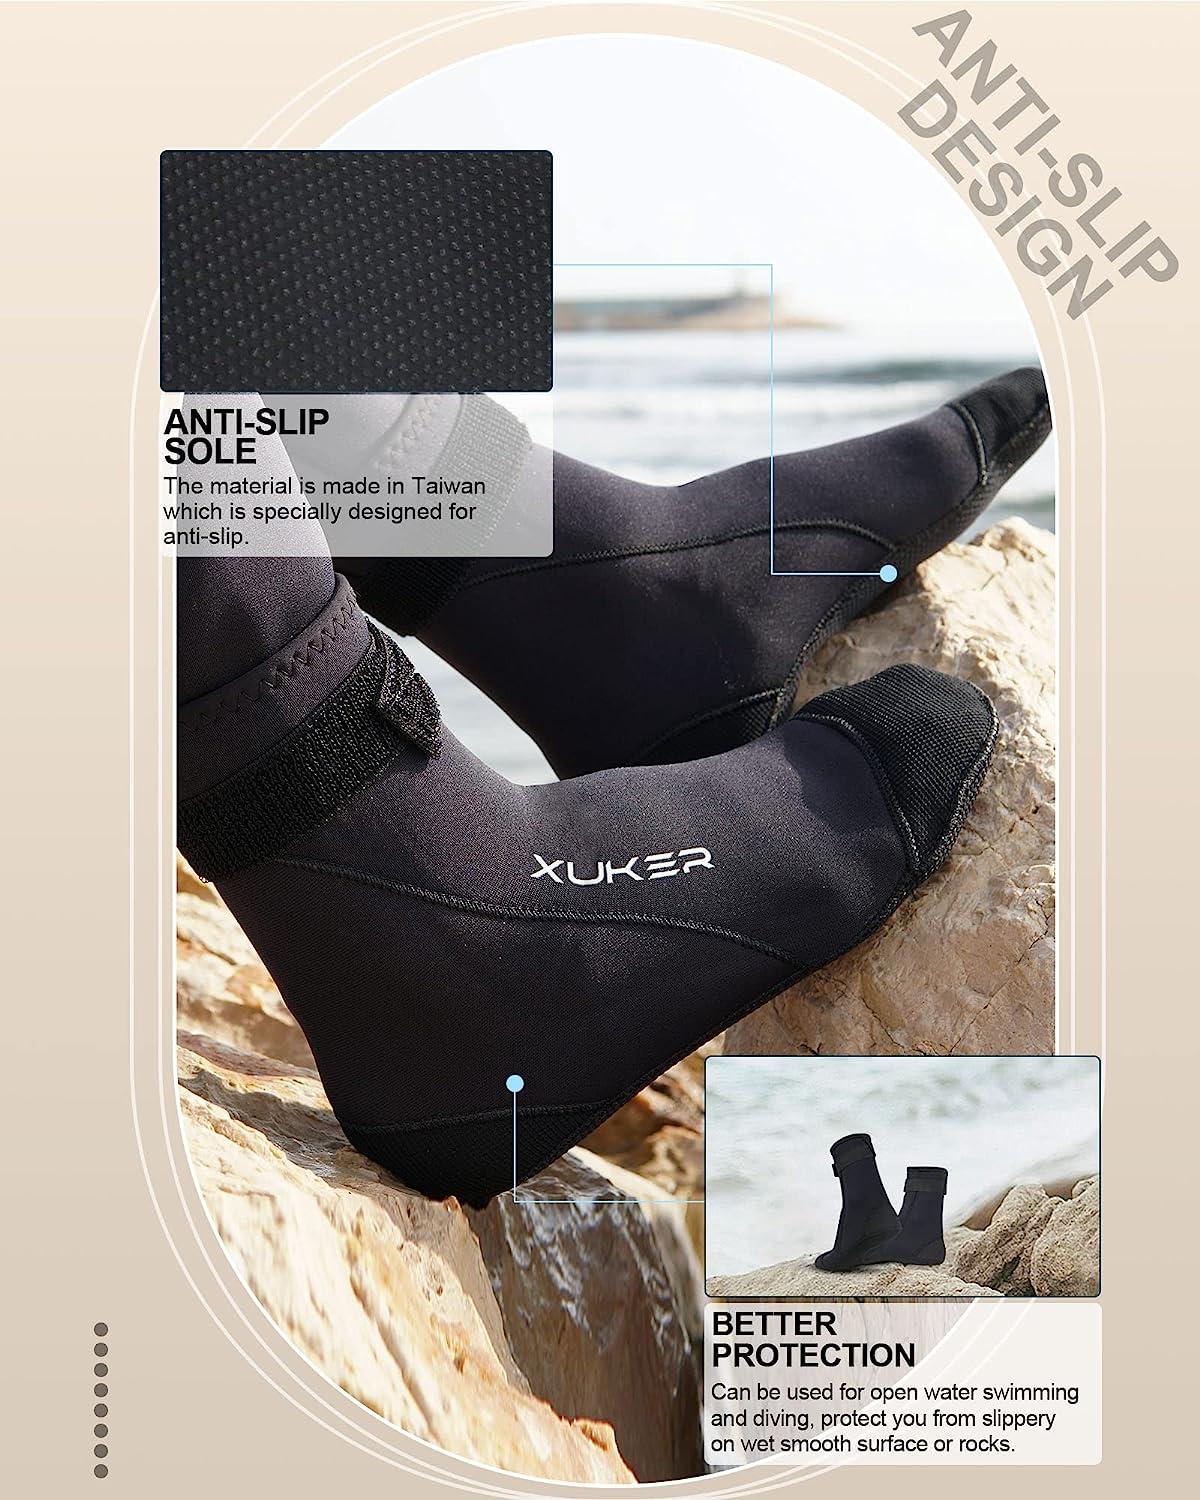 Seland 3mm neoprene socks – CanyonStore.be